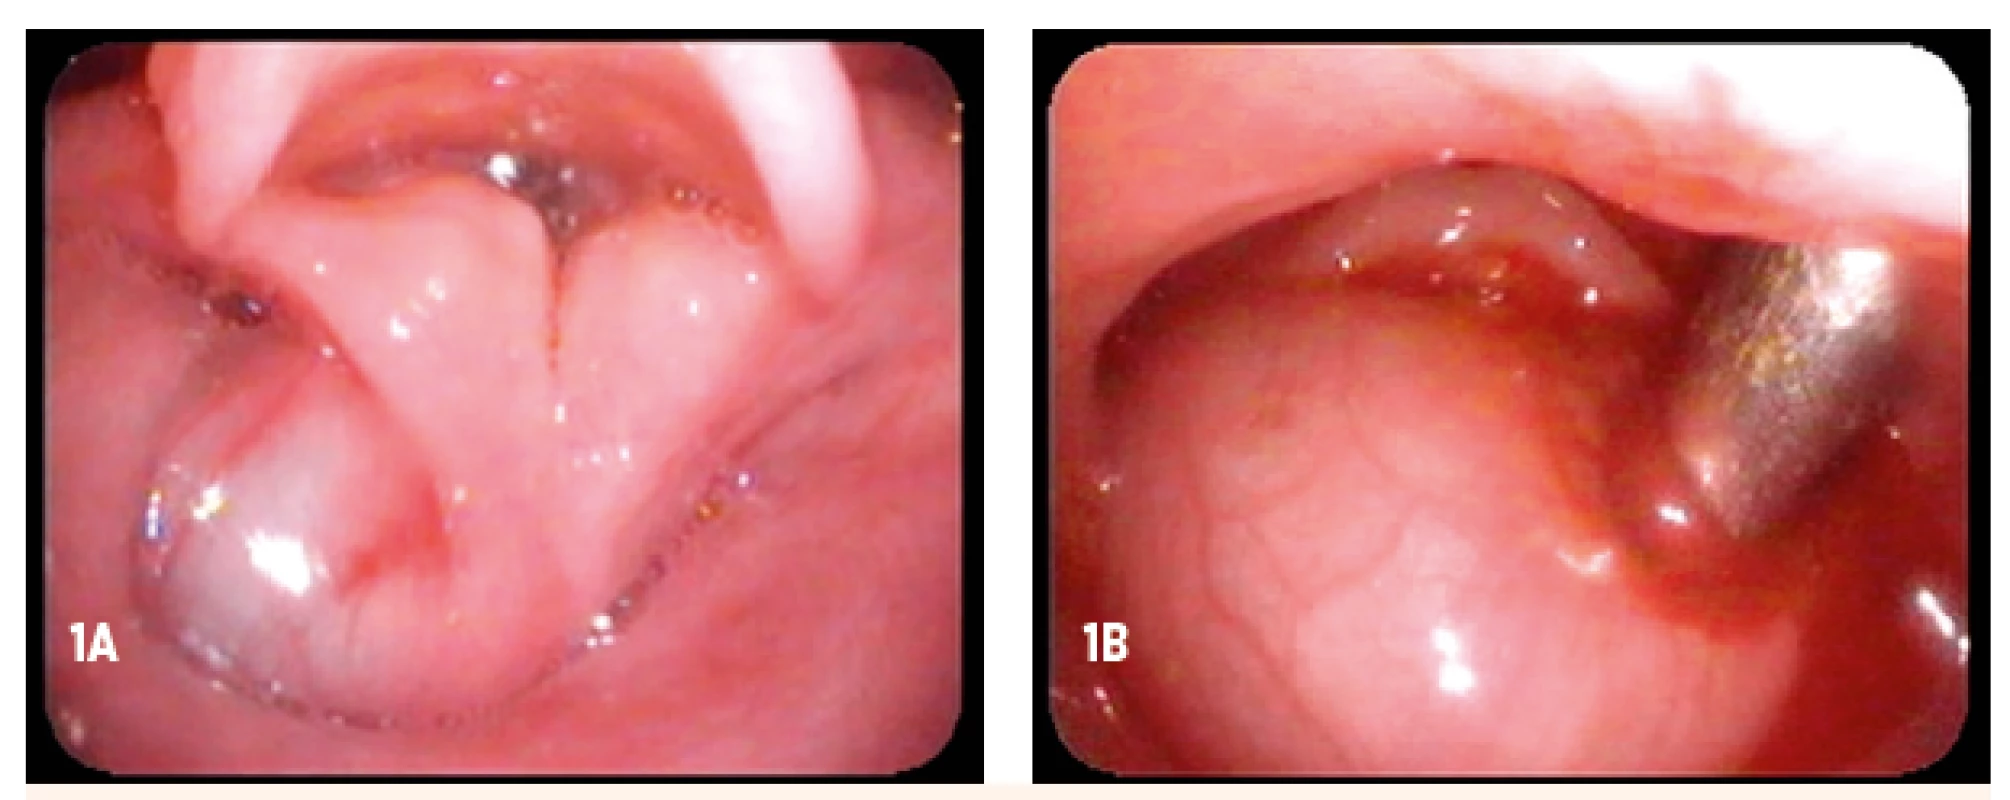 Cysta hrtana – peroperačný nález (vek dieťaťa 5 mesiacov). A – cysta z aryepiglotickej riasy vľavo, ktorá vypĺňa recessus piriformis vľavo, B – cysta obturujúca vchod do hrtana (po povytiahnutí)
Fig. 1. Laryngeal cyst – peroperative view (age of child 5 months). A – cyst of left aryepiglottic fold filling left piriform recess, B – cyst obturaiting supraglottic structures of larynx (after elevation)